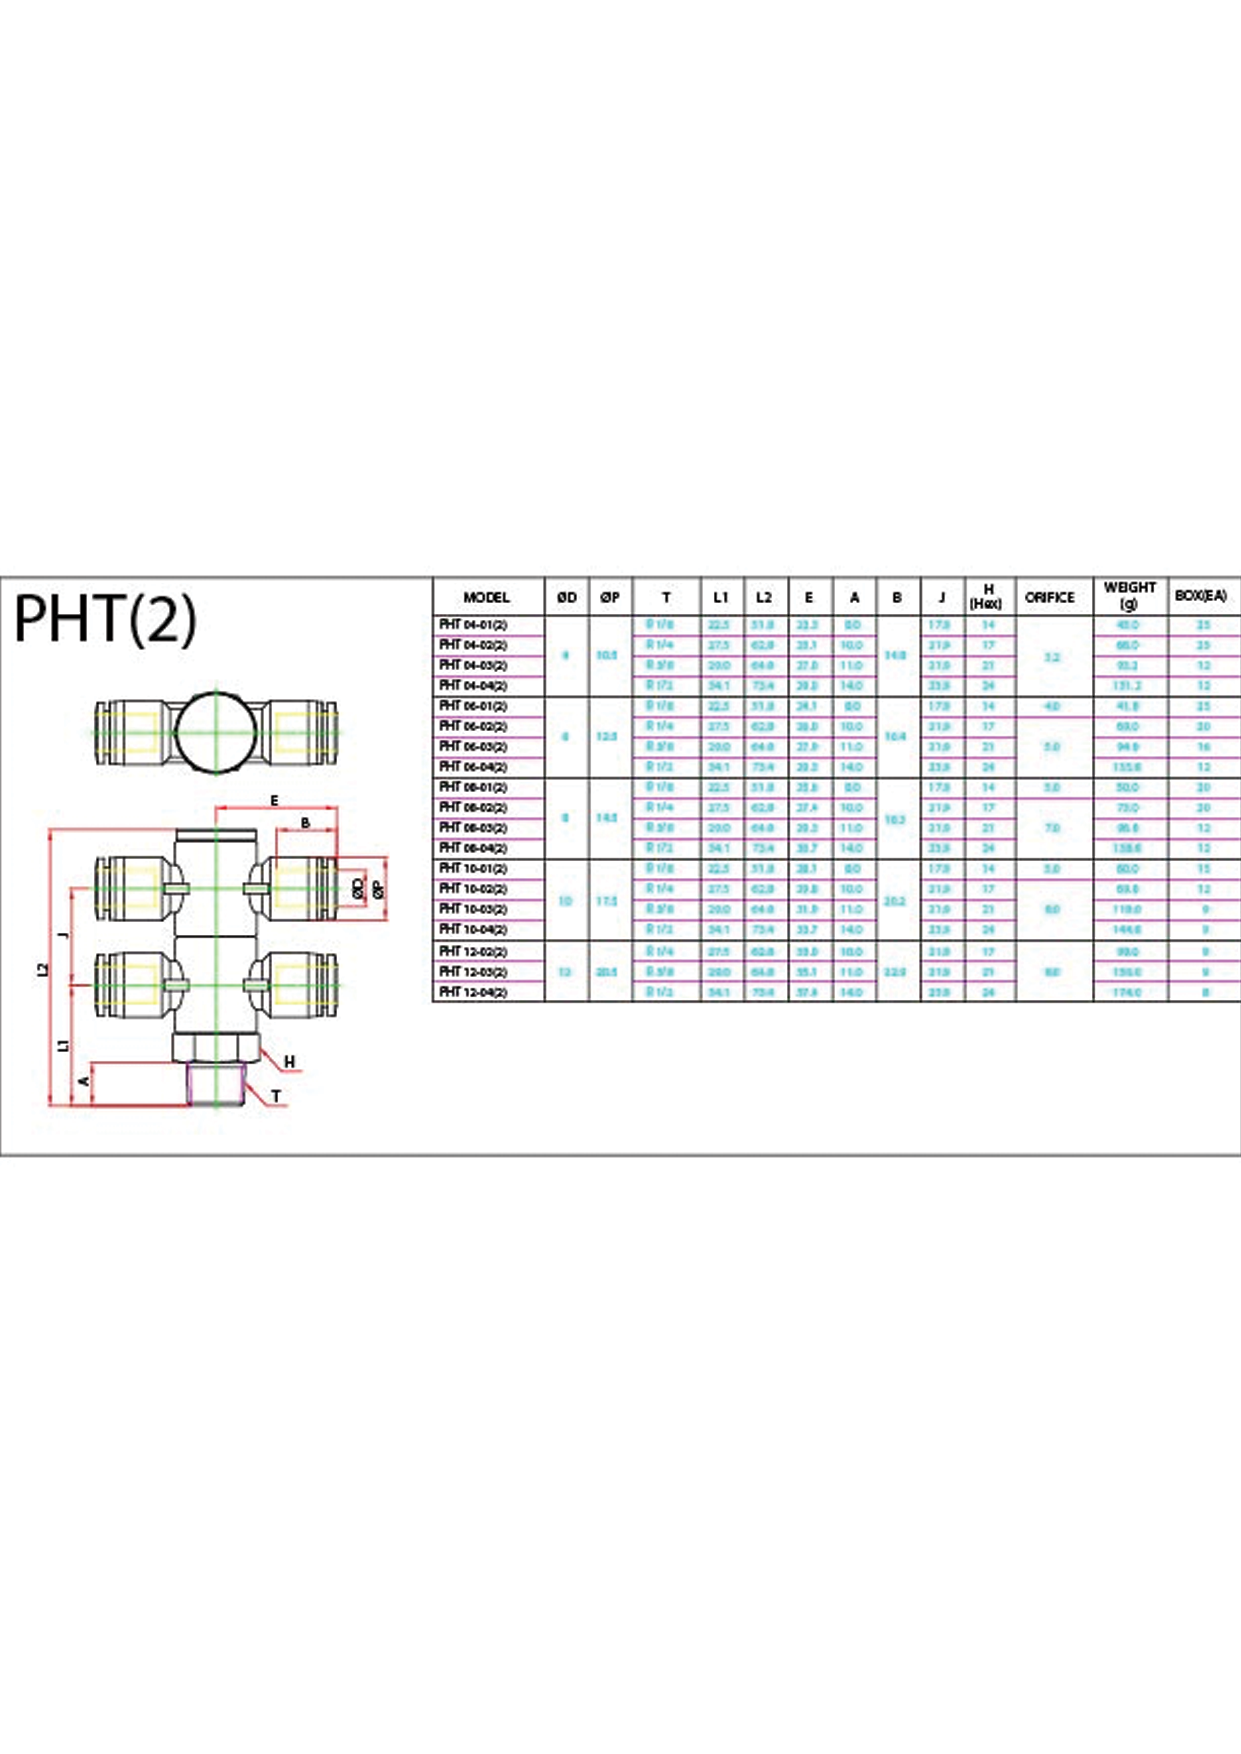 PHT(2) (Metric) Data Sheet ( 153 KB )